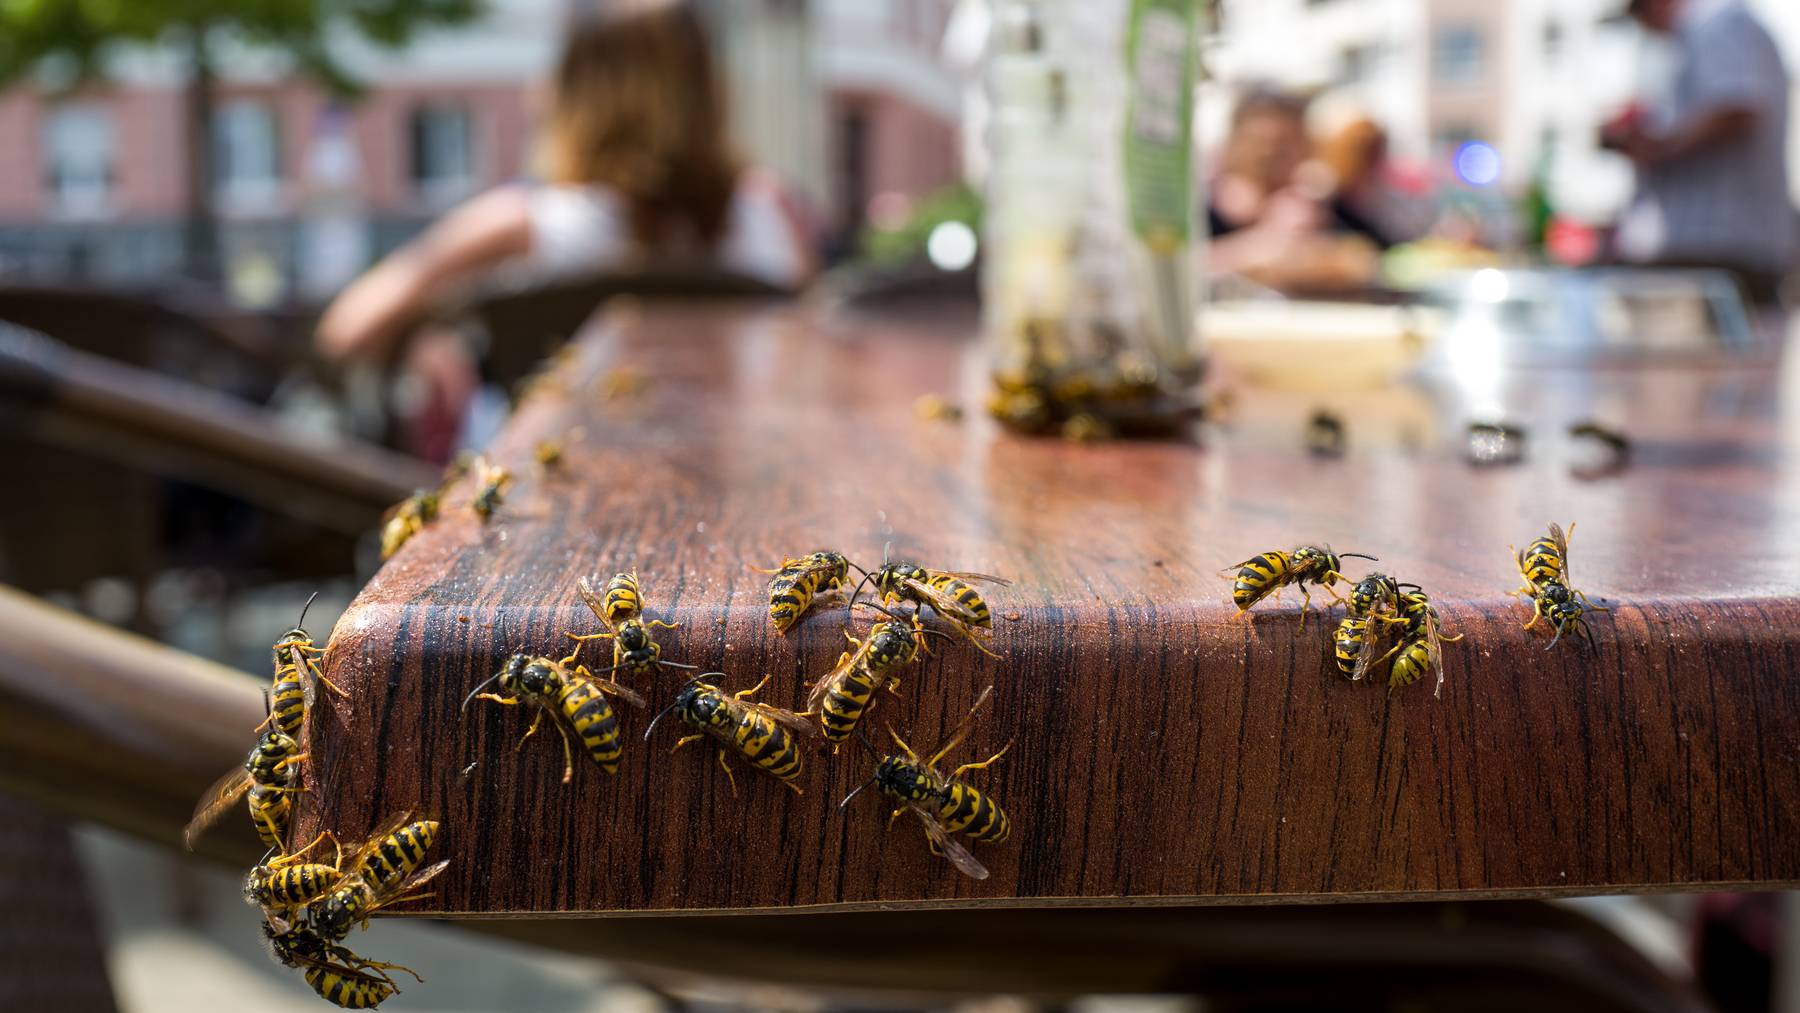 Für viele sind die Wespen ein Albtraum. Wir haben mit einem Experten über Tipps und Tricks gesprochen, um sie fernzuhalten.